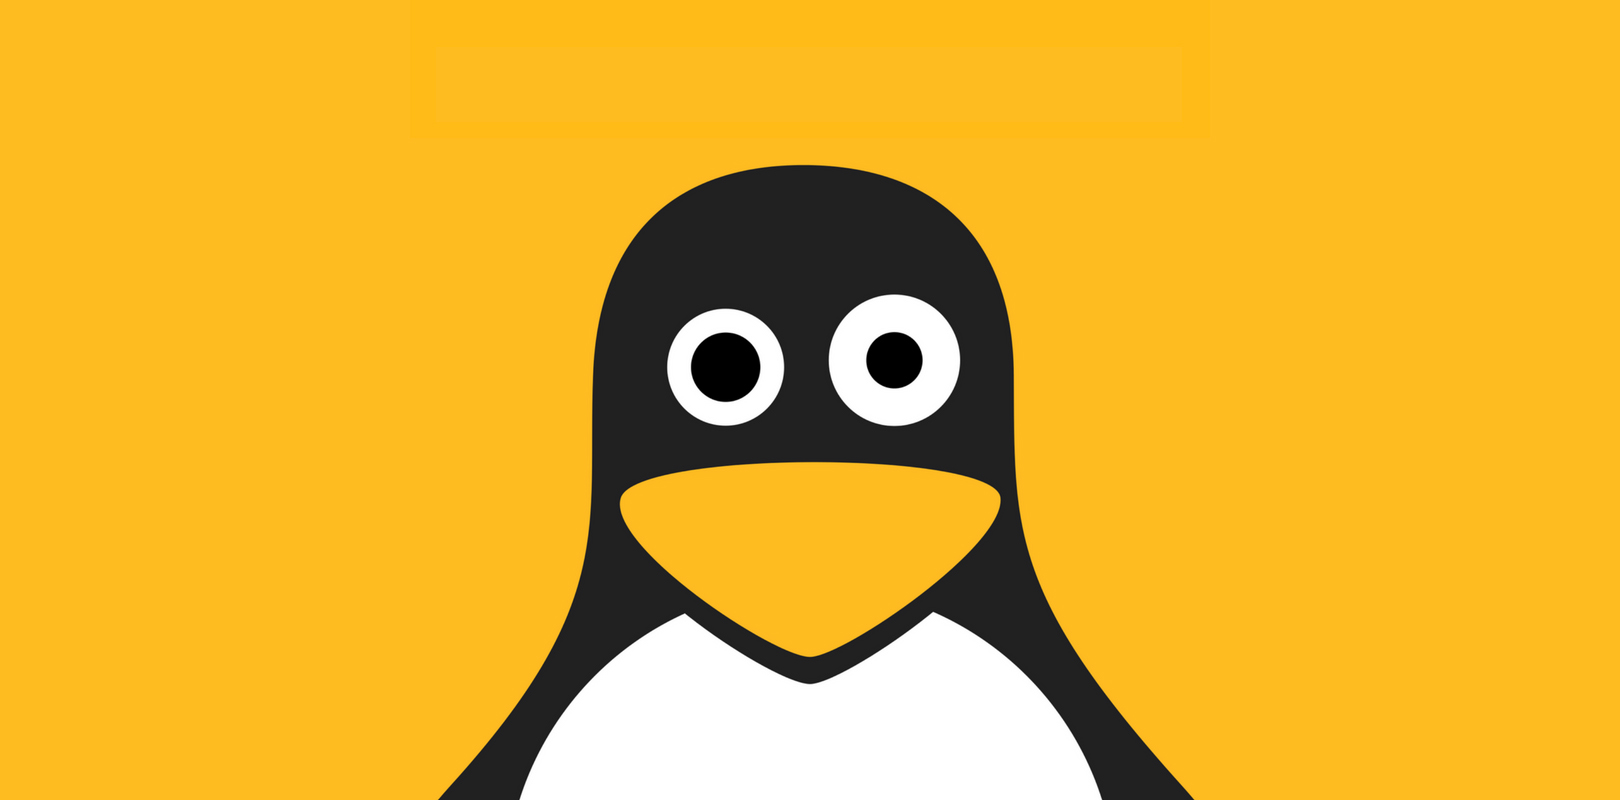 Https linux 1. Линукс. Linux аватарка. Консоли линукс. Аватар линукс.